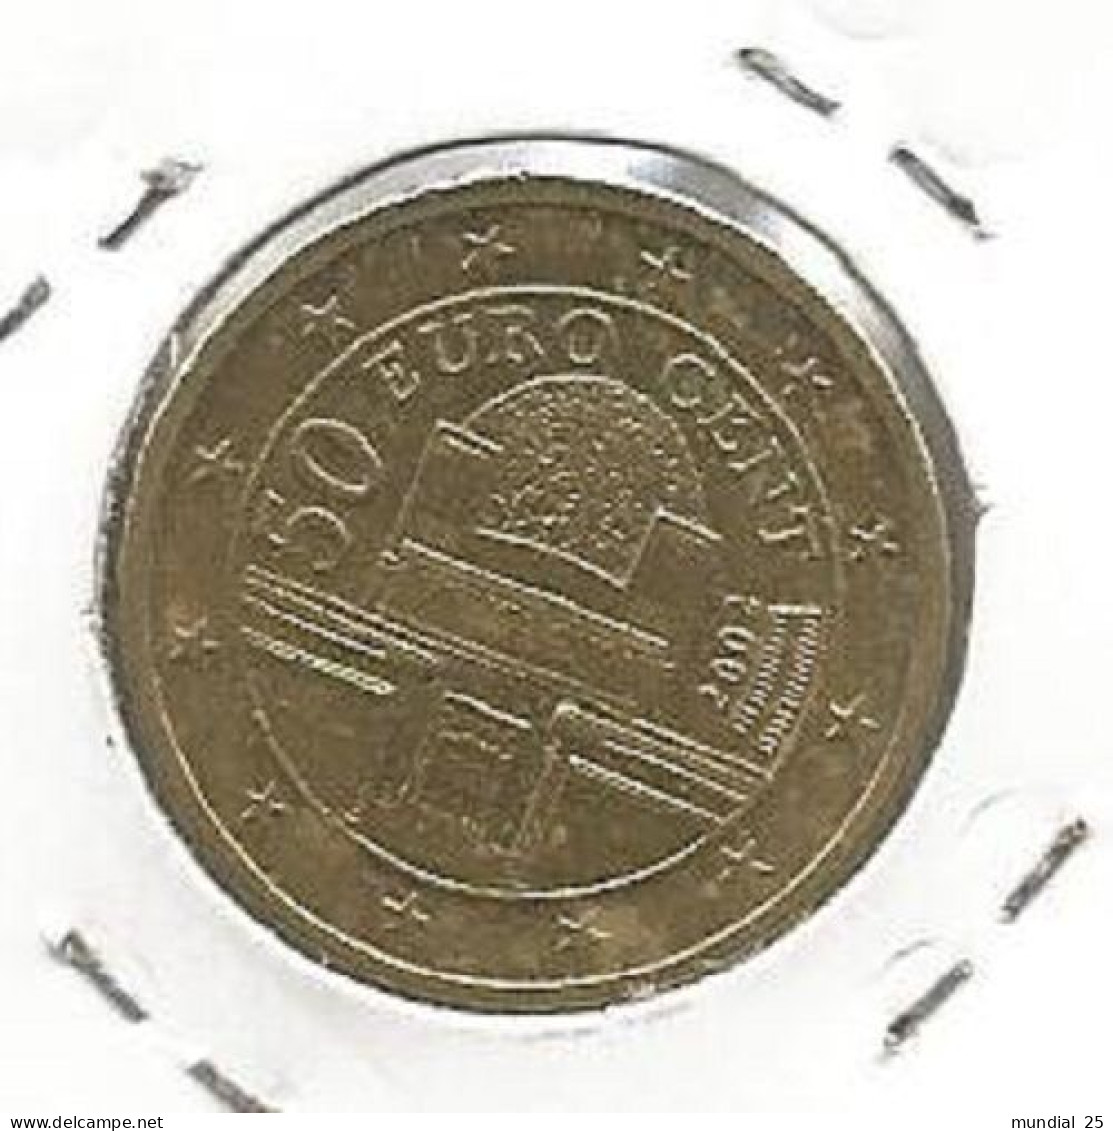 AUSTRIA 50 EURO CENT 2002 - Austria